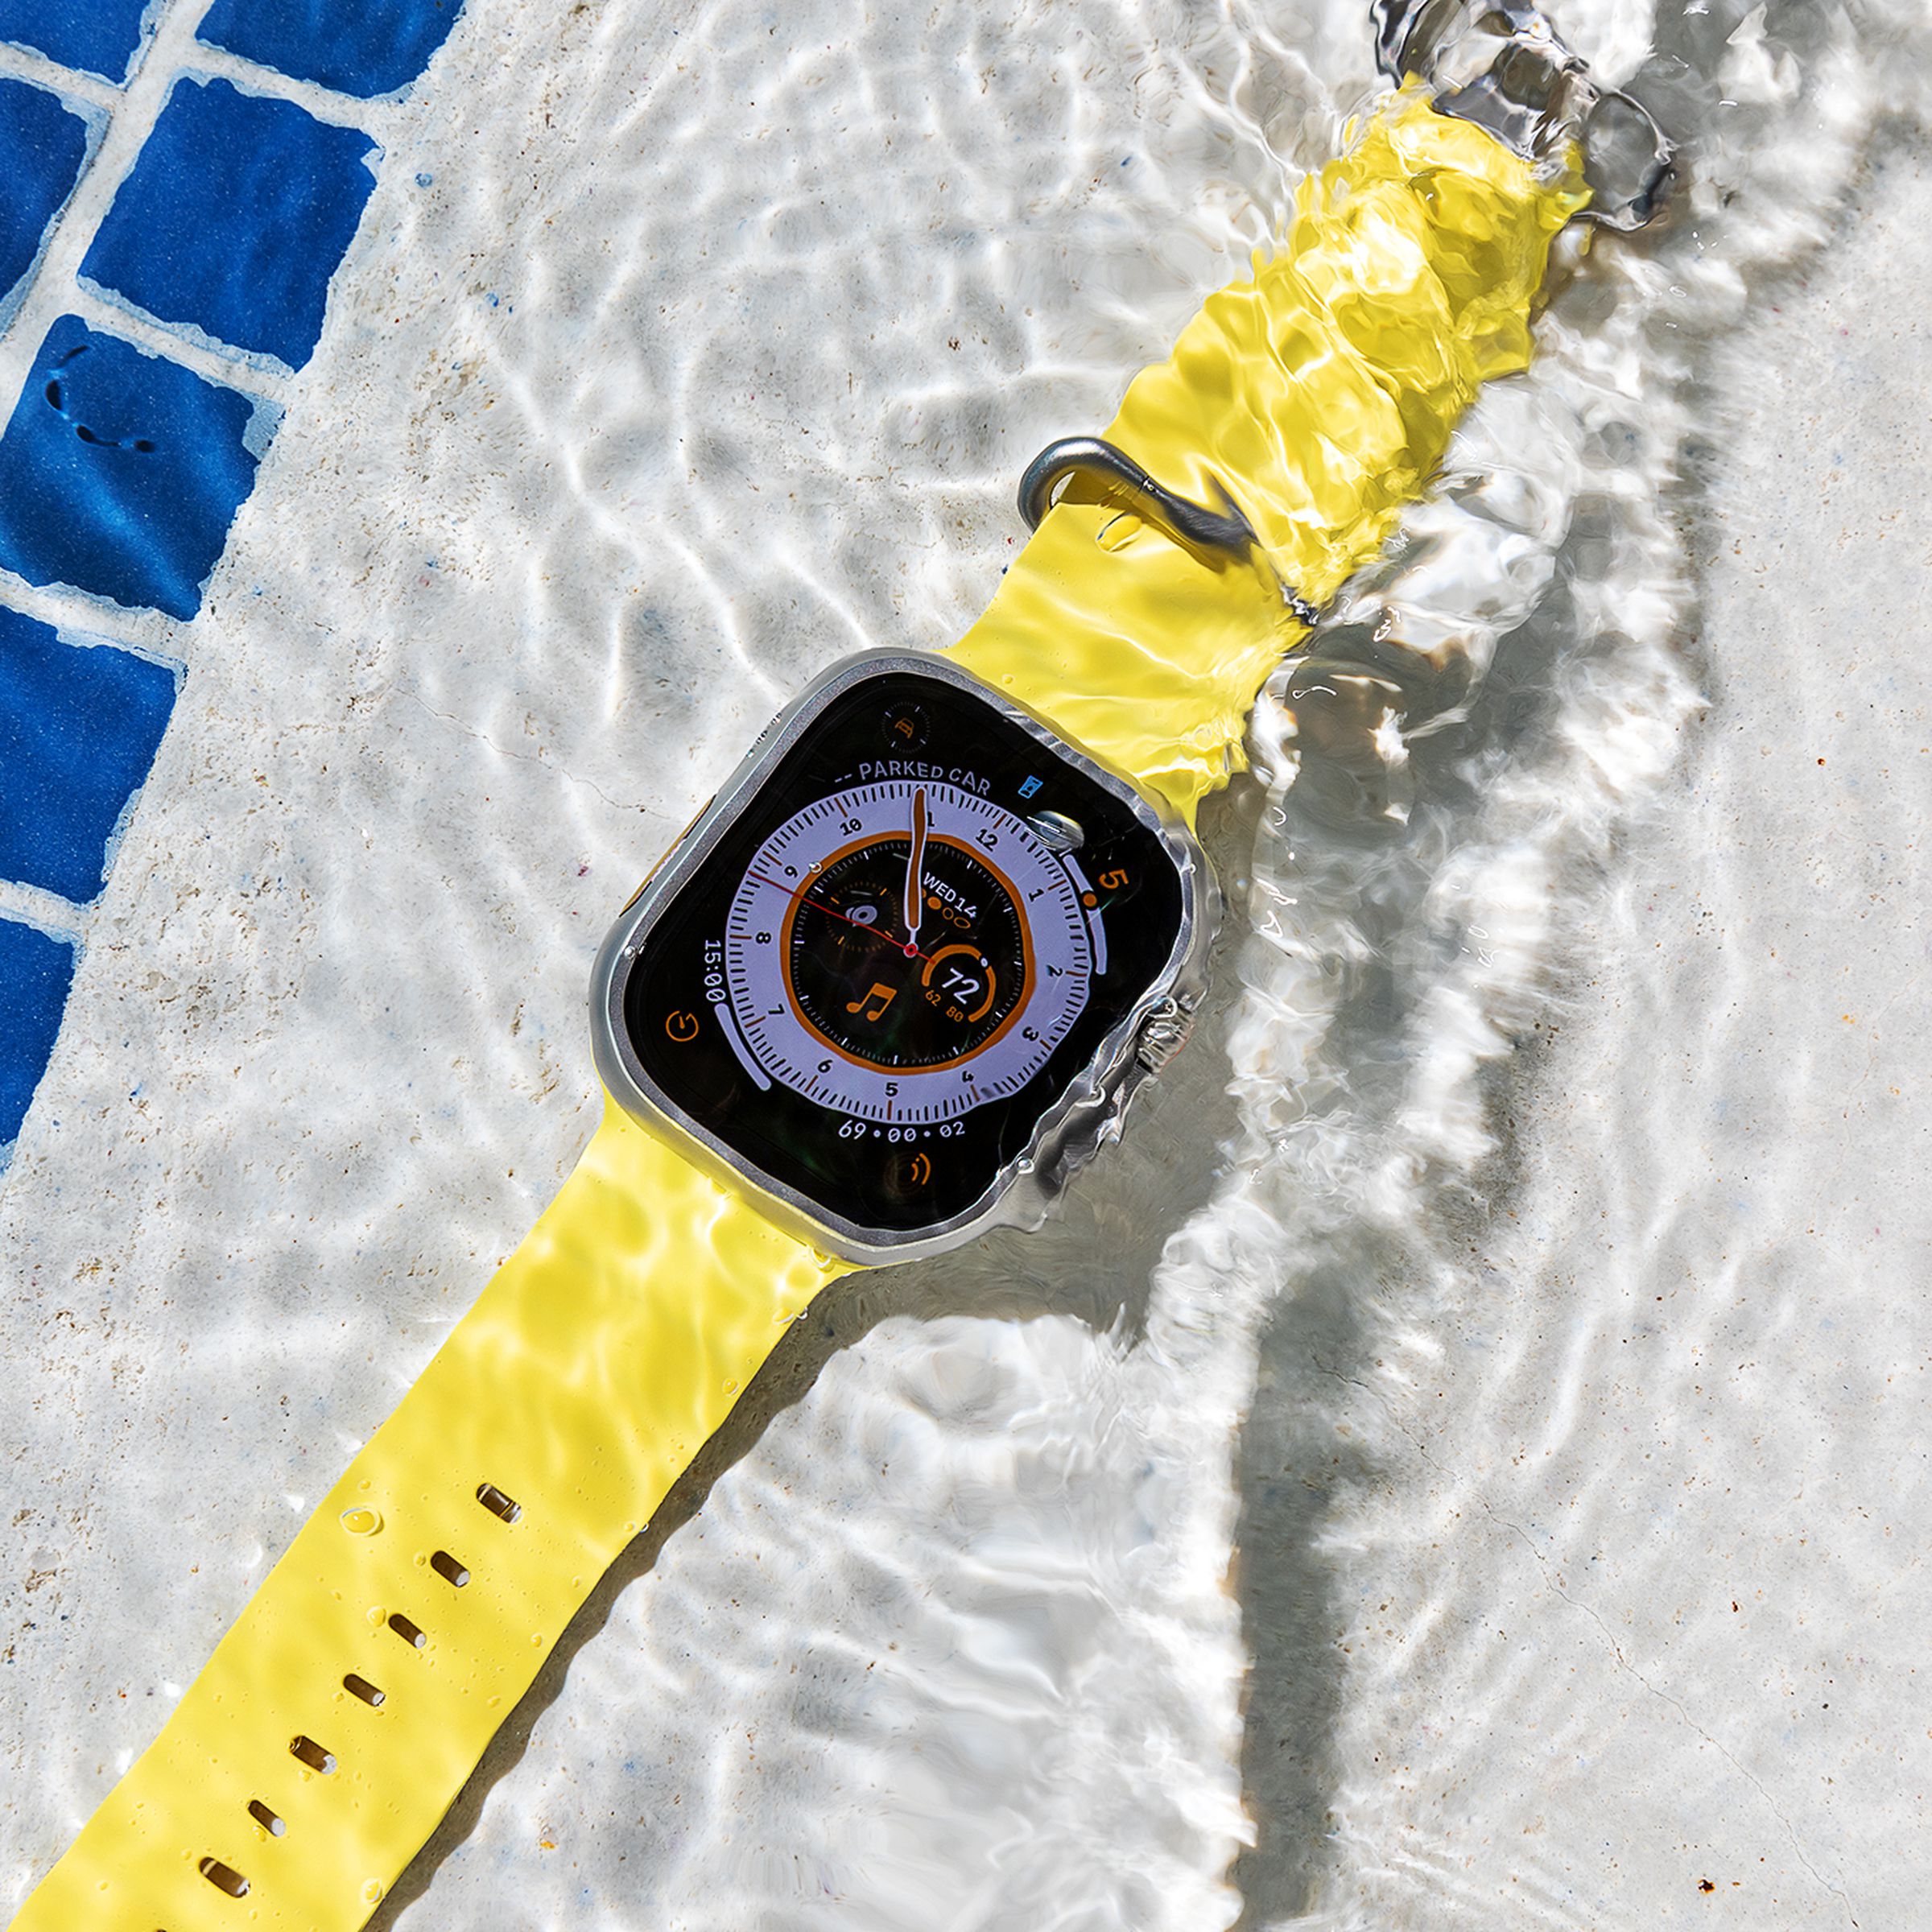 Apple Watch Ultra underwater in a pool